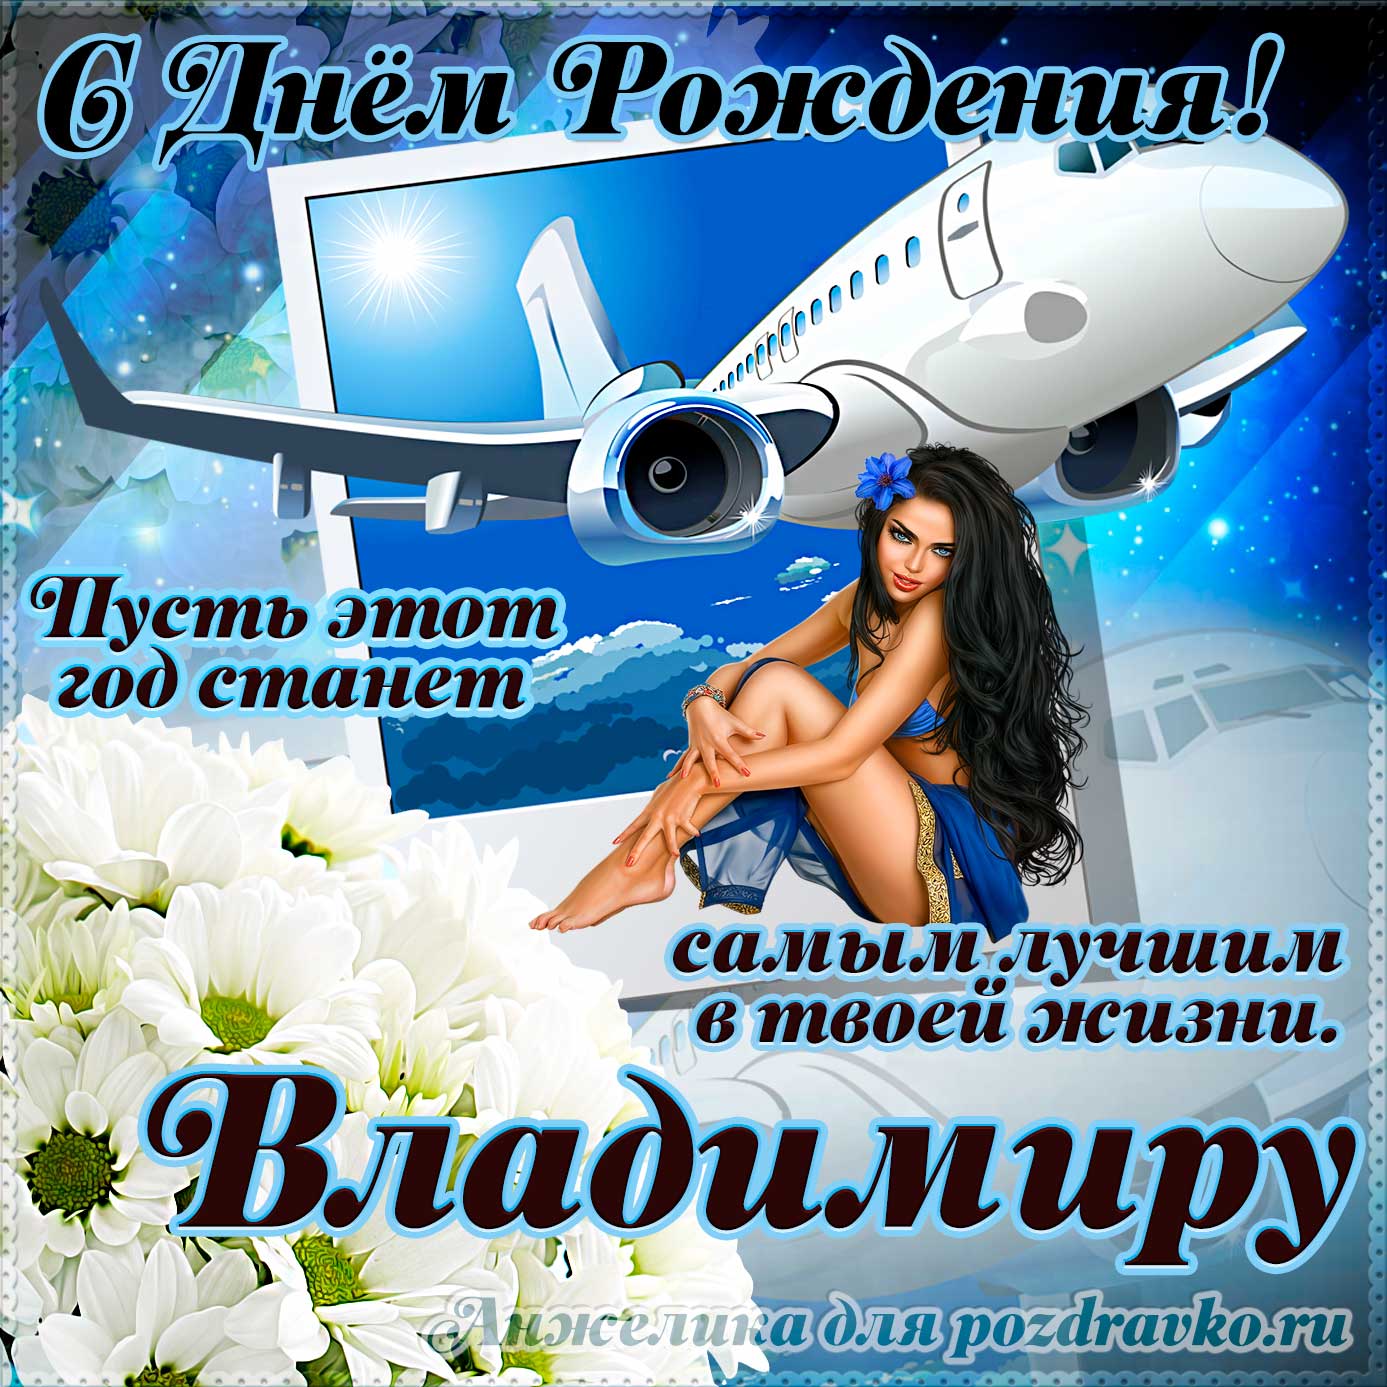 Открытка - Владимиру на день рождения с красивым пожеланием самолетом и девушкой. Скачать бесплатно или отправить картинку.